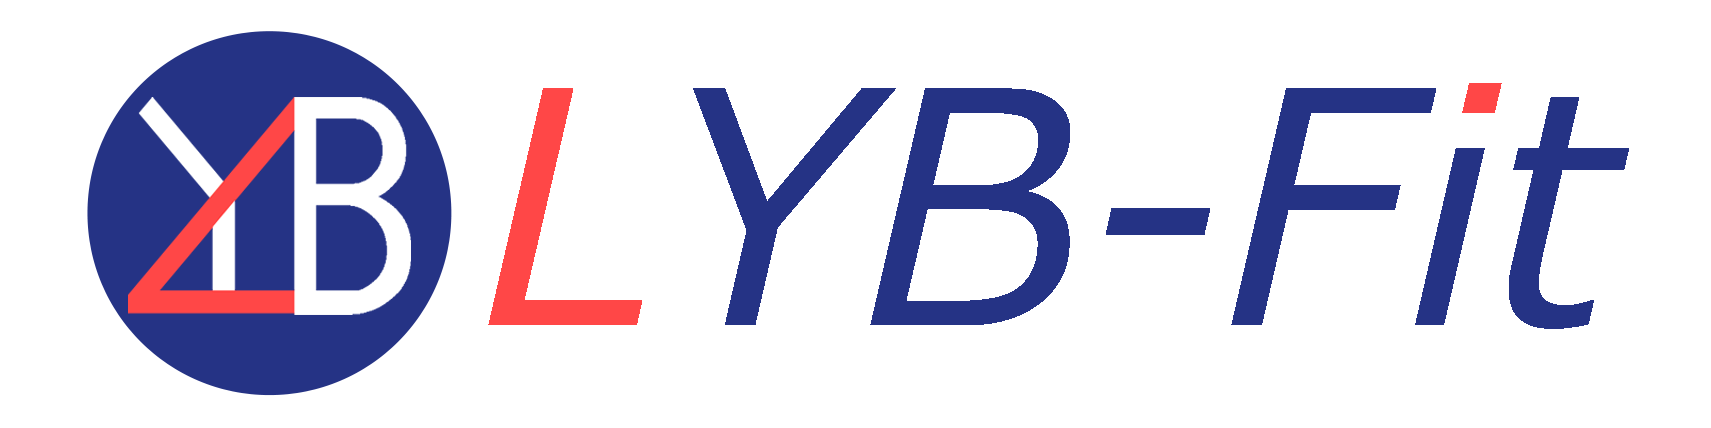 筋トレ情報サイト | LYB-Fit